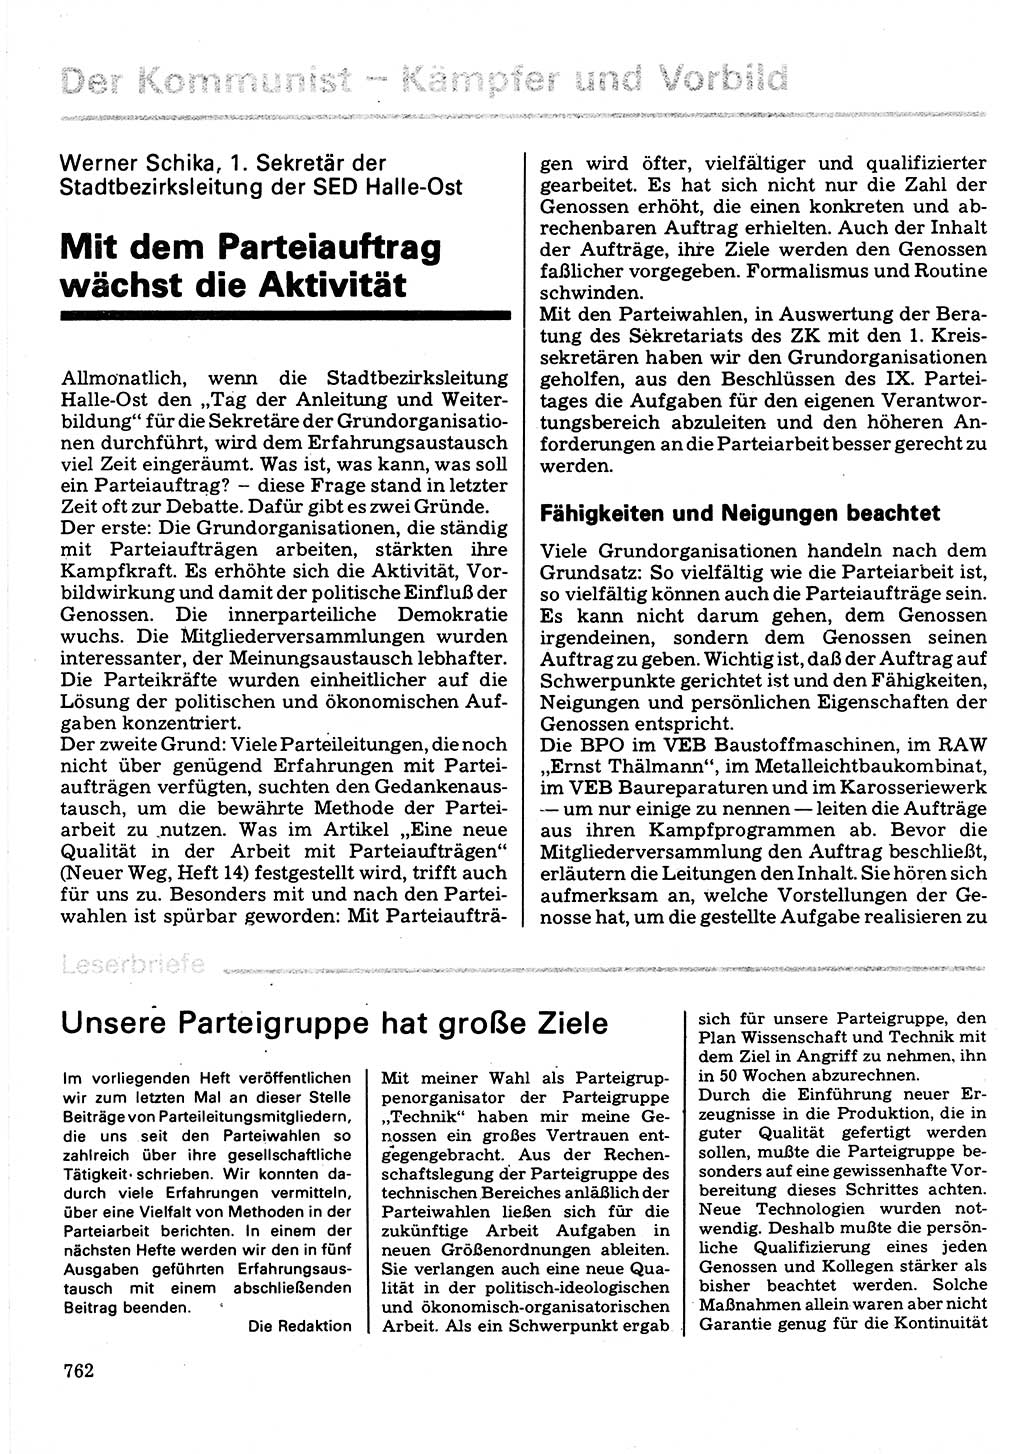 Neuer Weg (NW), Organ des Zentralkomitees (ZK) der SED (Sozialistische Einheitspartei Deutschlands) für Fragen des Parteilebens, 32. Jahrgang [Deutsche Demokratische Republik (DDR)] 1977, Seite 762 (NW ZK SED DDR 1977, S. 762)